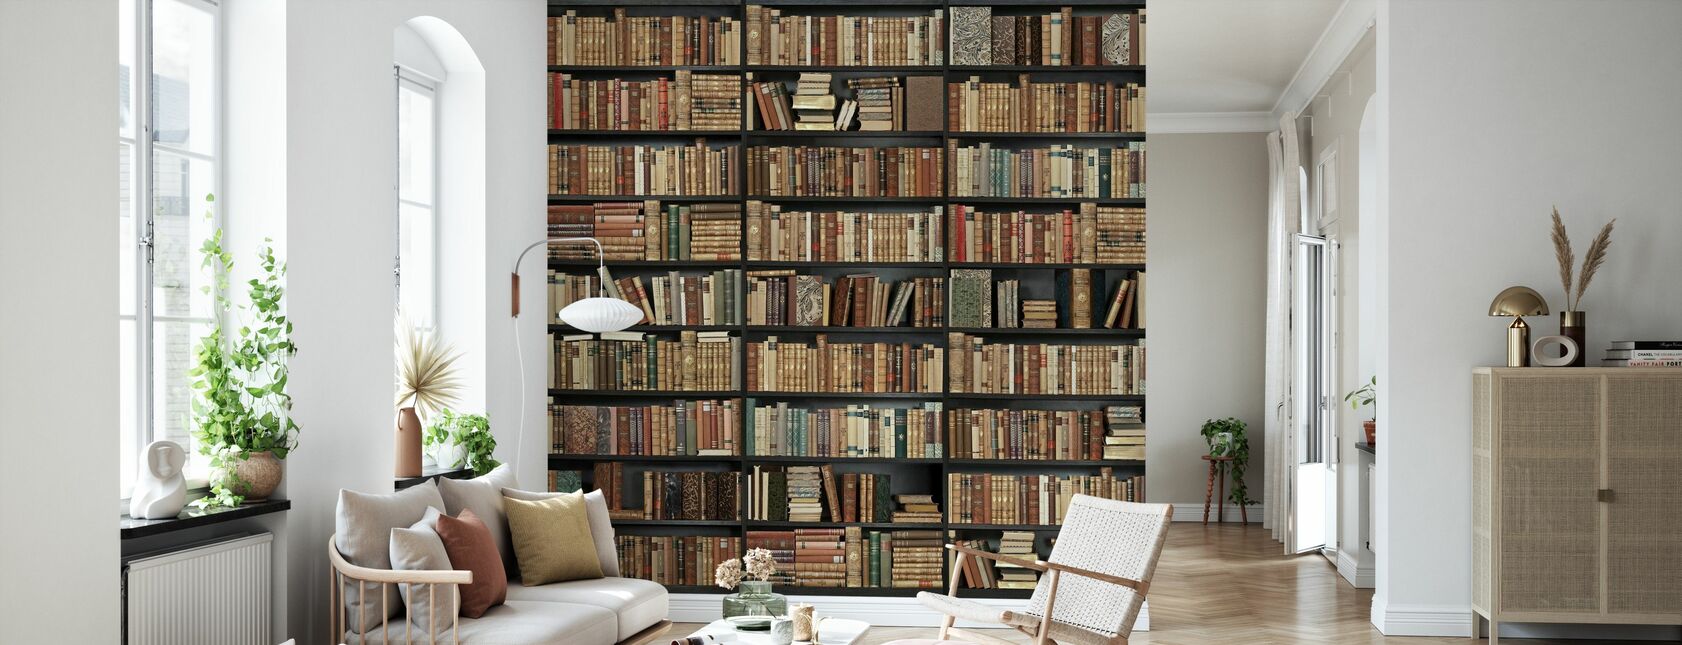 Bookshelf - Black - Brown - Wallpaper - Living Room